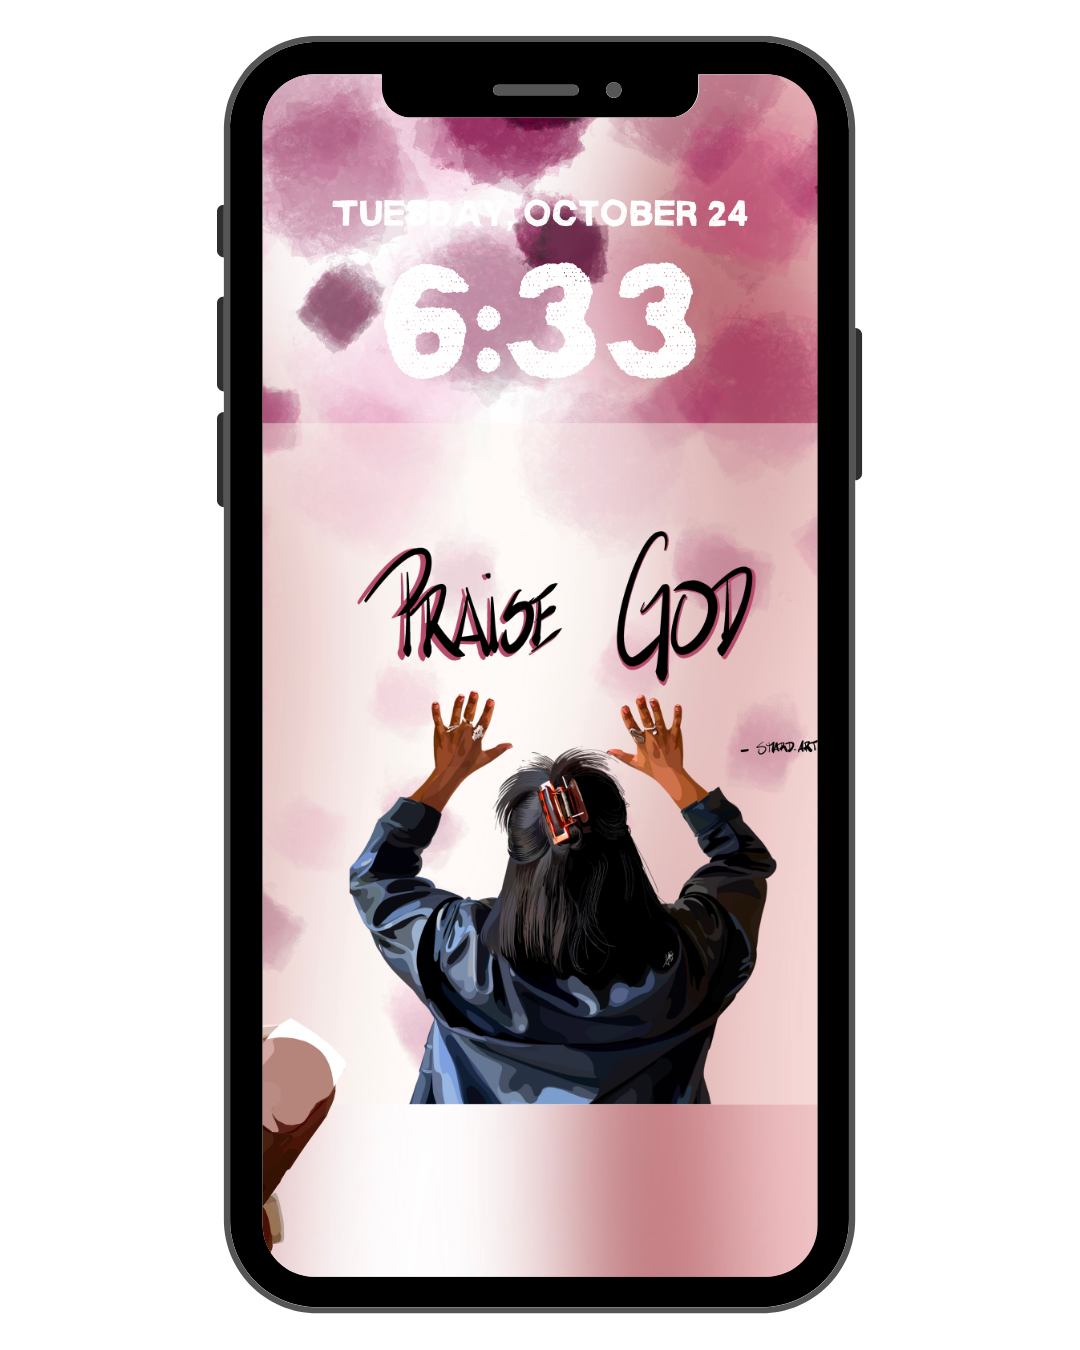 Praise God - Phone Screensaver